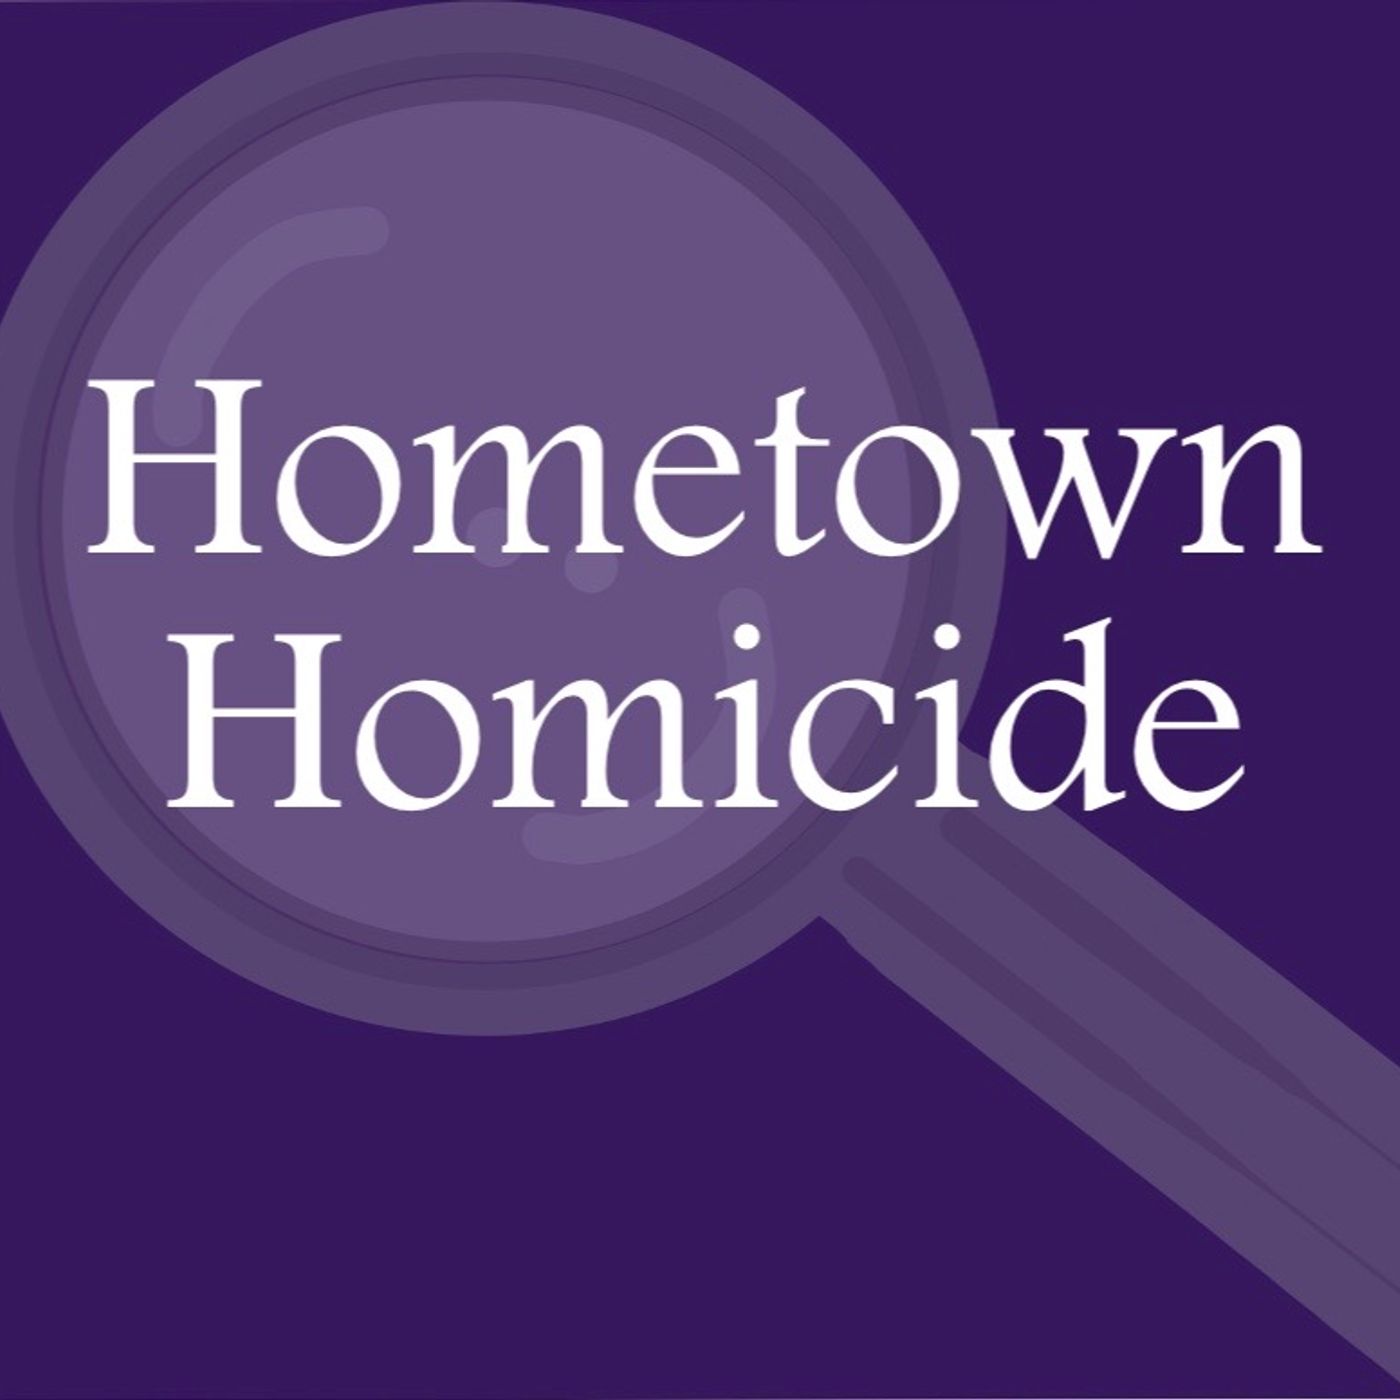 Hometown Homicide Trailer